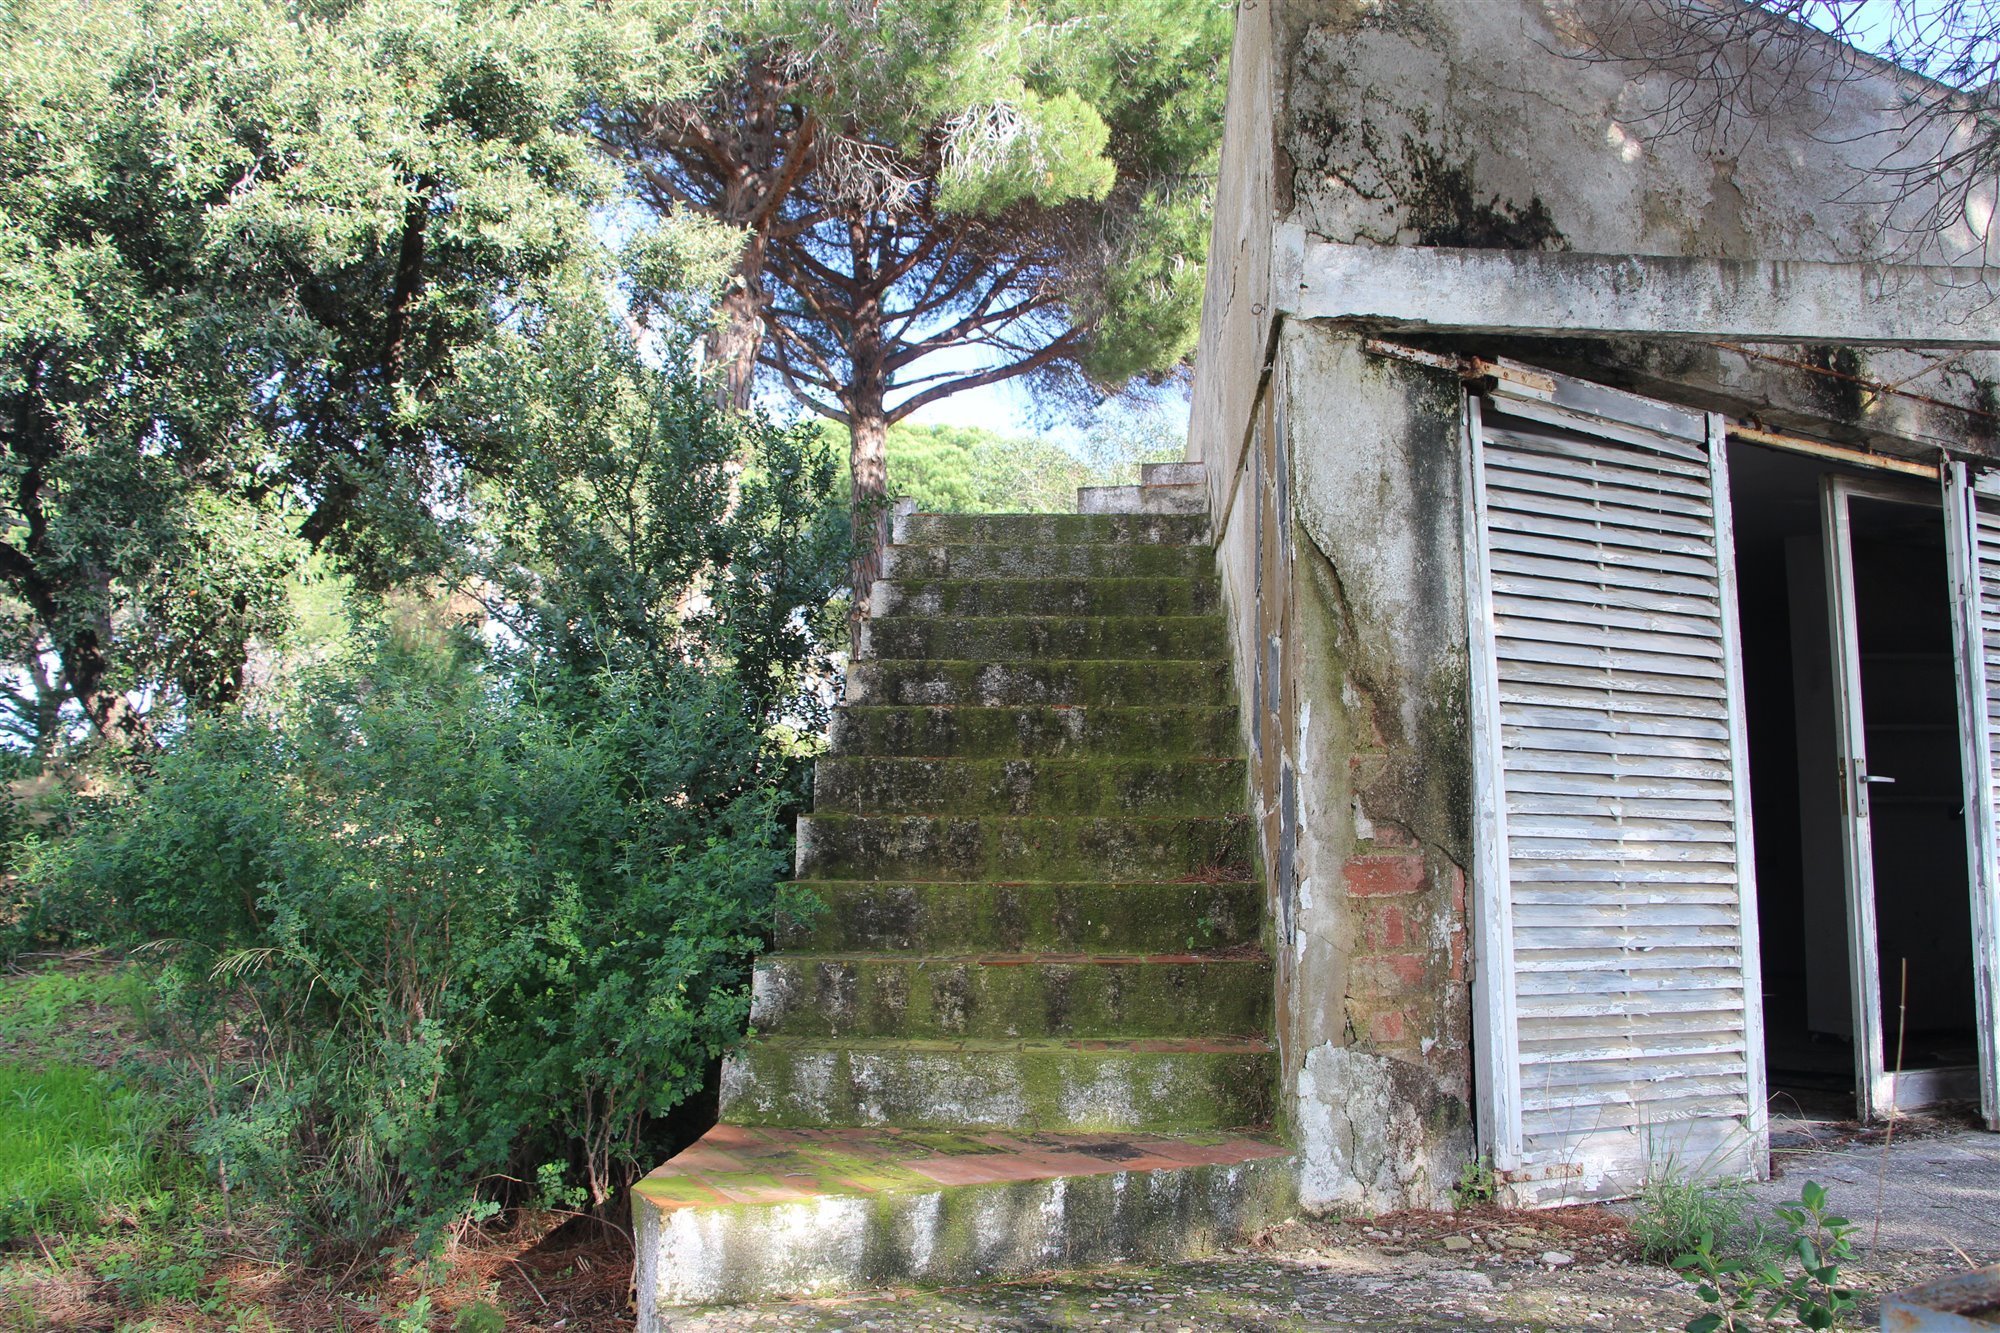 Escaleras de la casa de Coderch. Escaleras cubiertas de musgo en un lateral de la casa, fotografía de Morrosko Vila-San-Juan